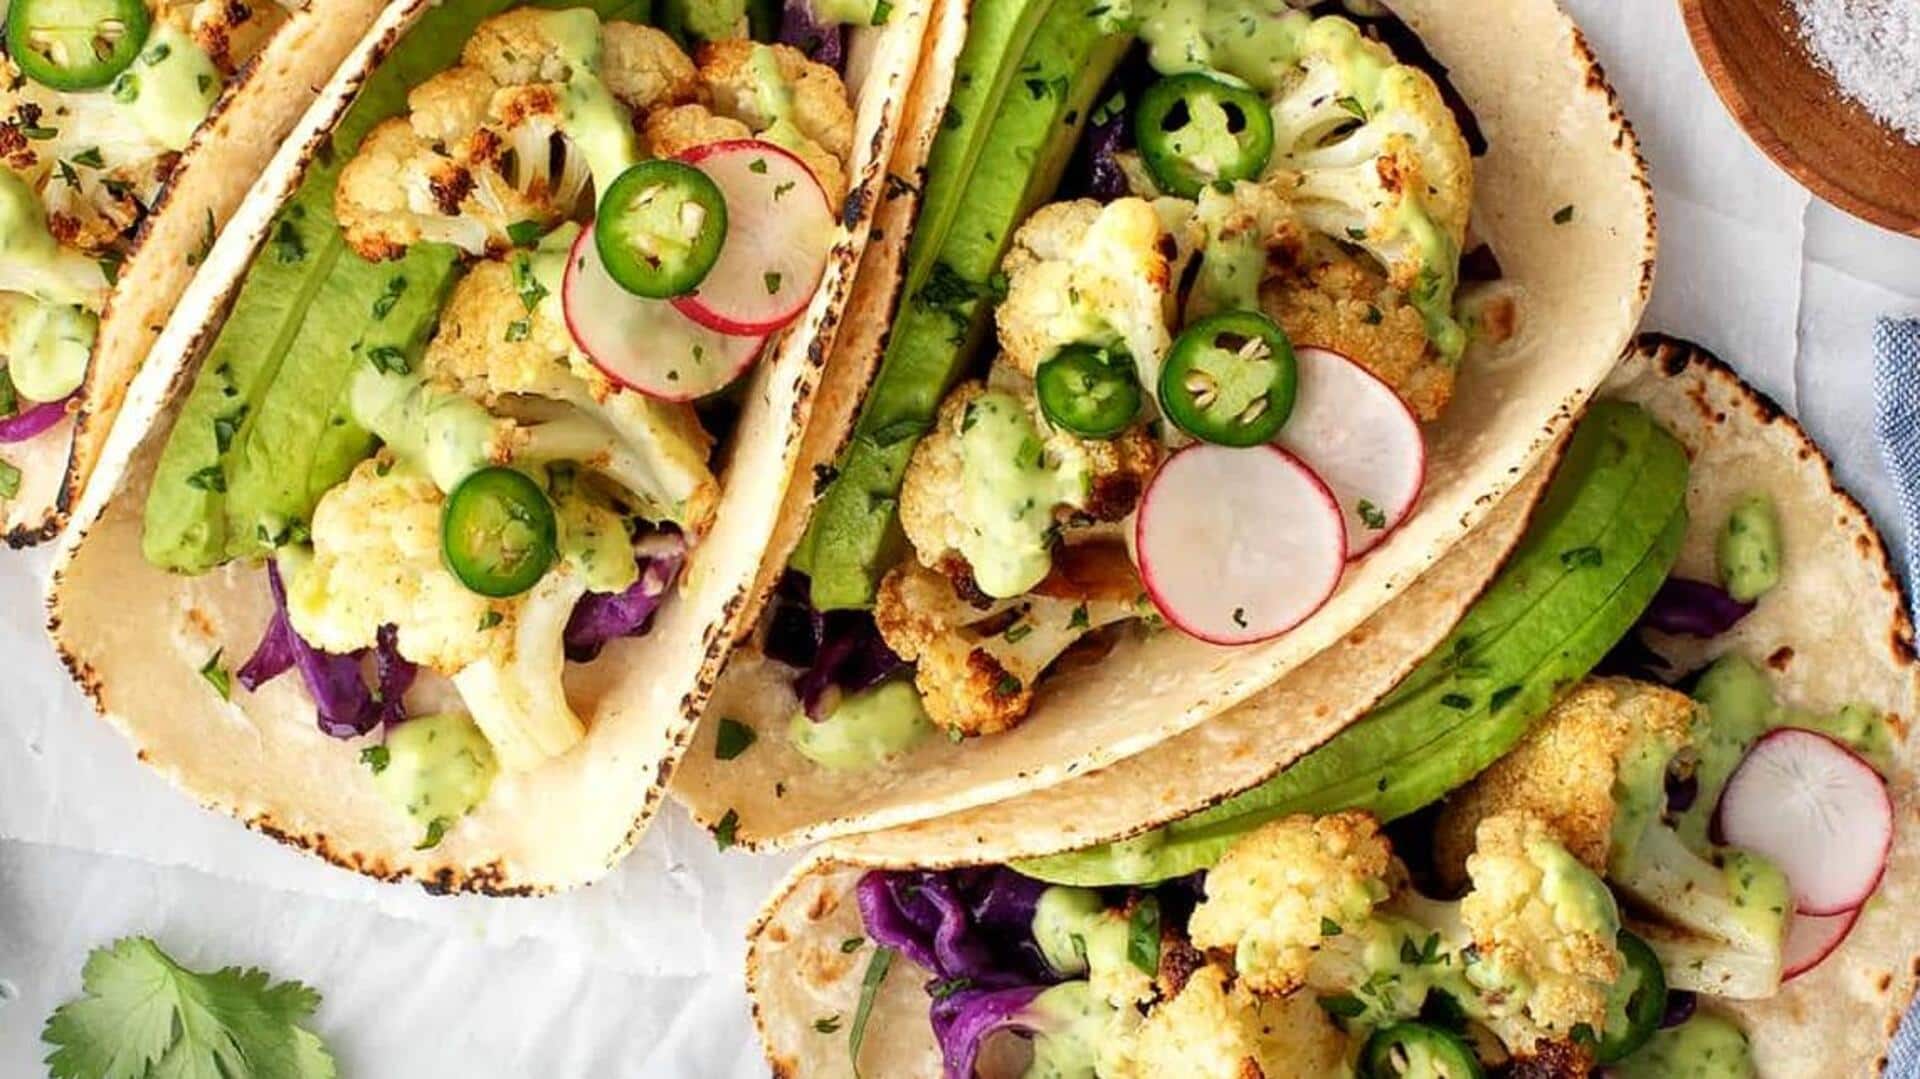 Recipe: Cook delicious vegan cauliflower tacos